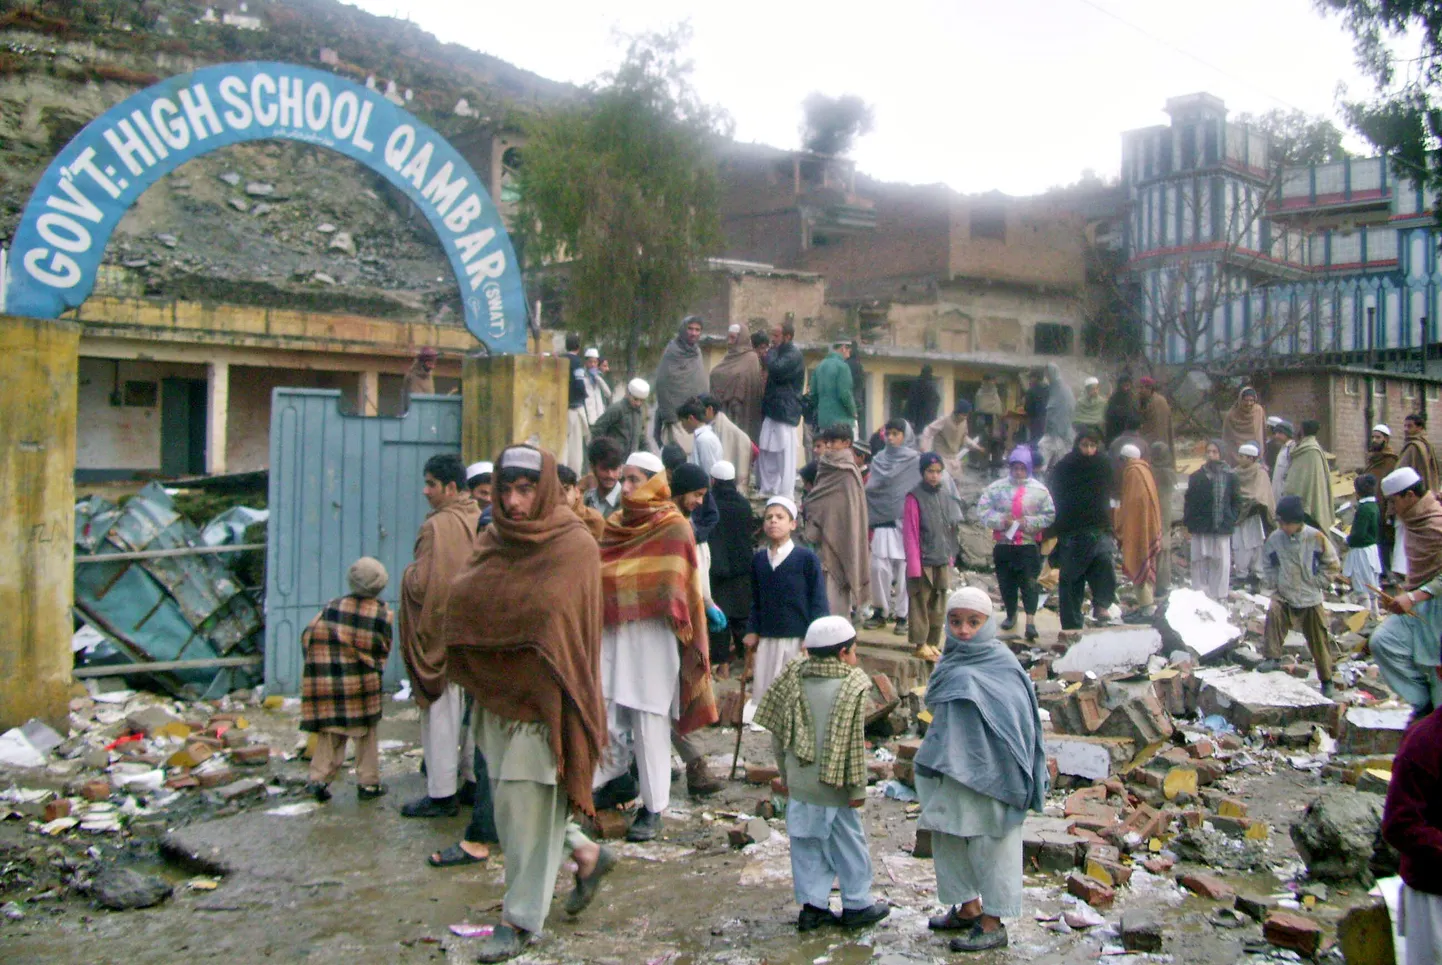 Pakistani õpilased kogunemas Swati orus purustatud koolimaja rusudele.